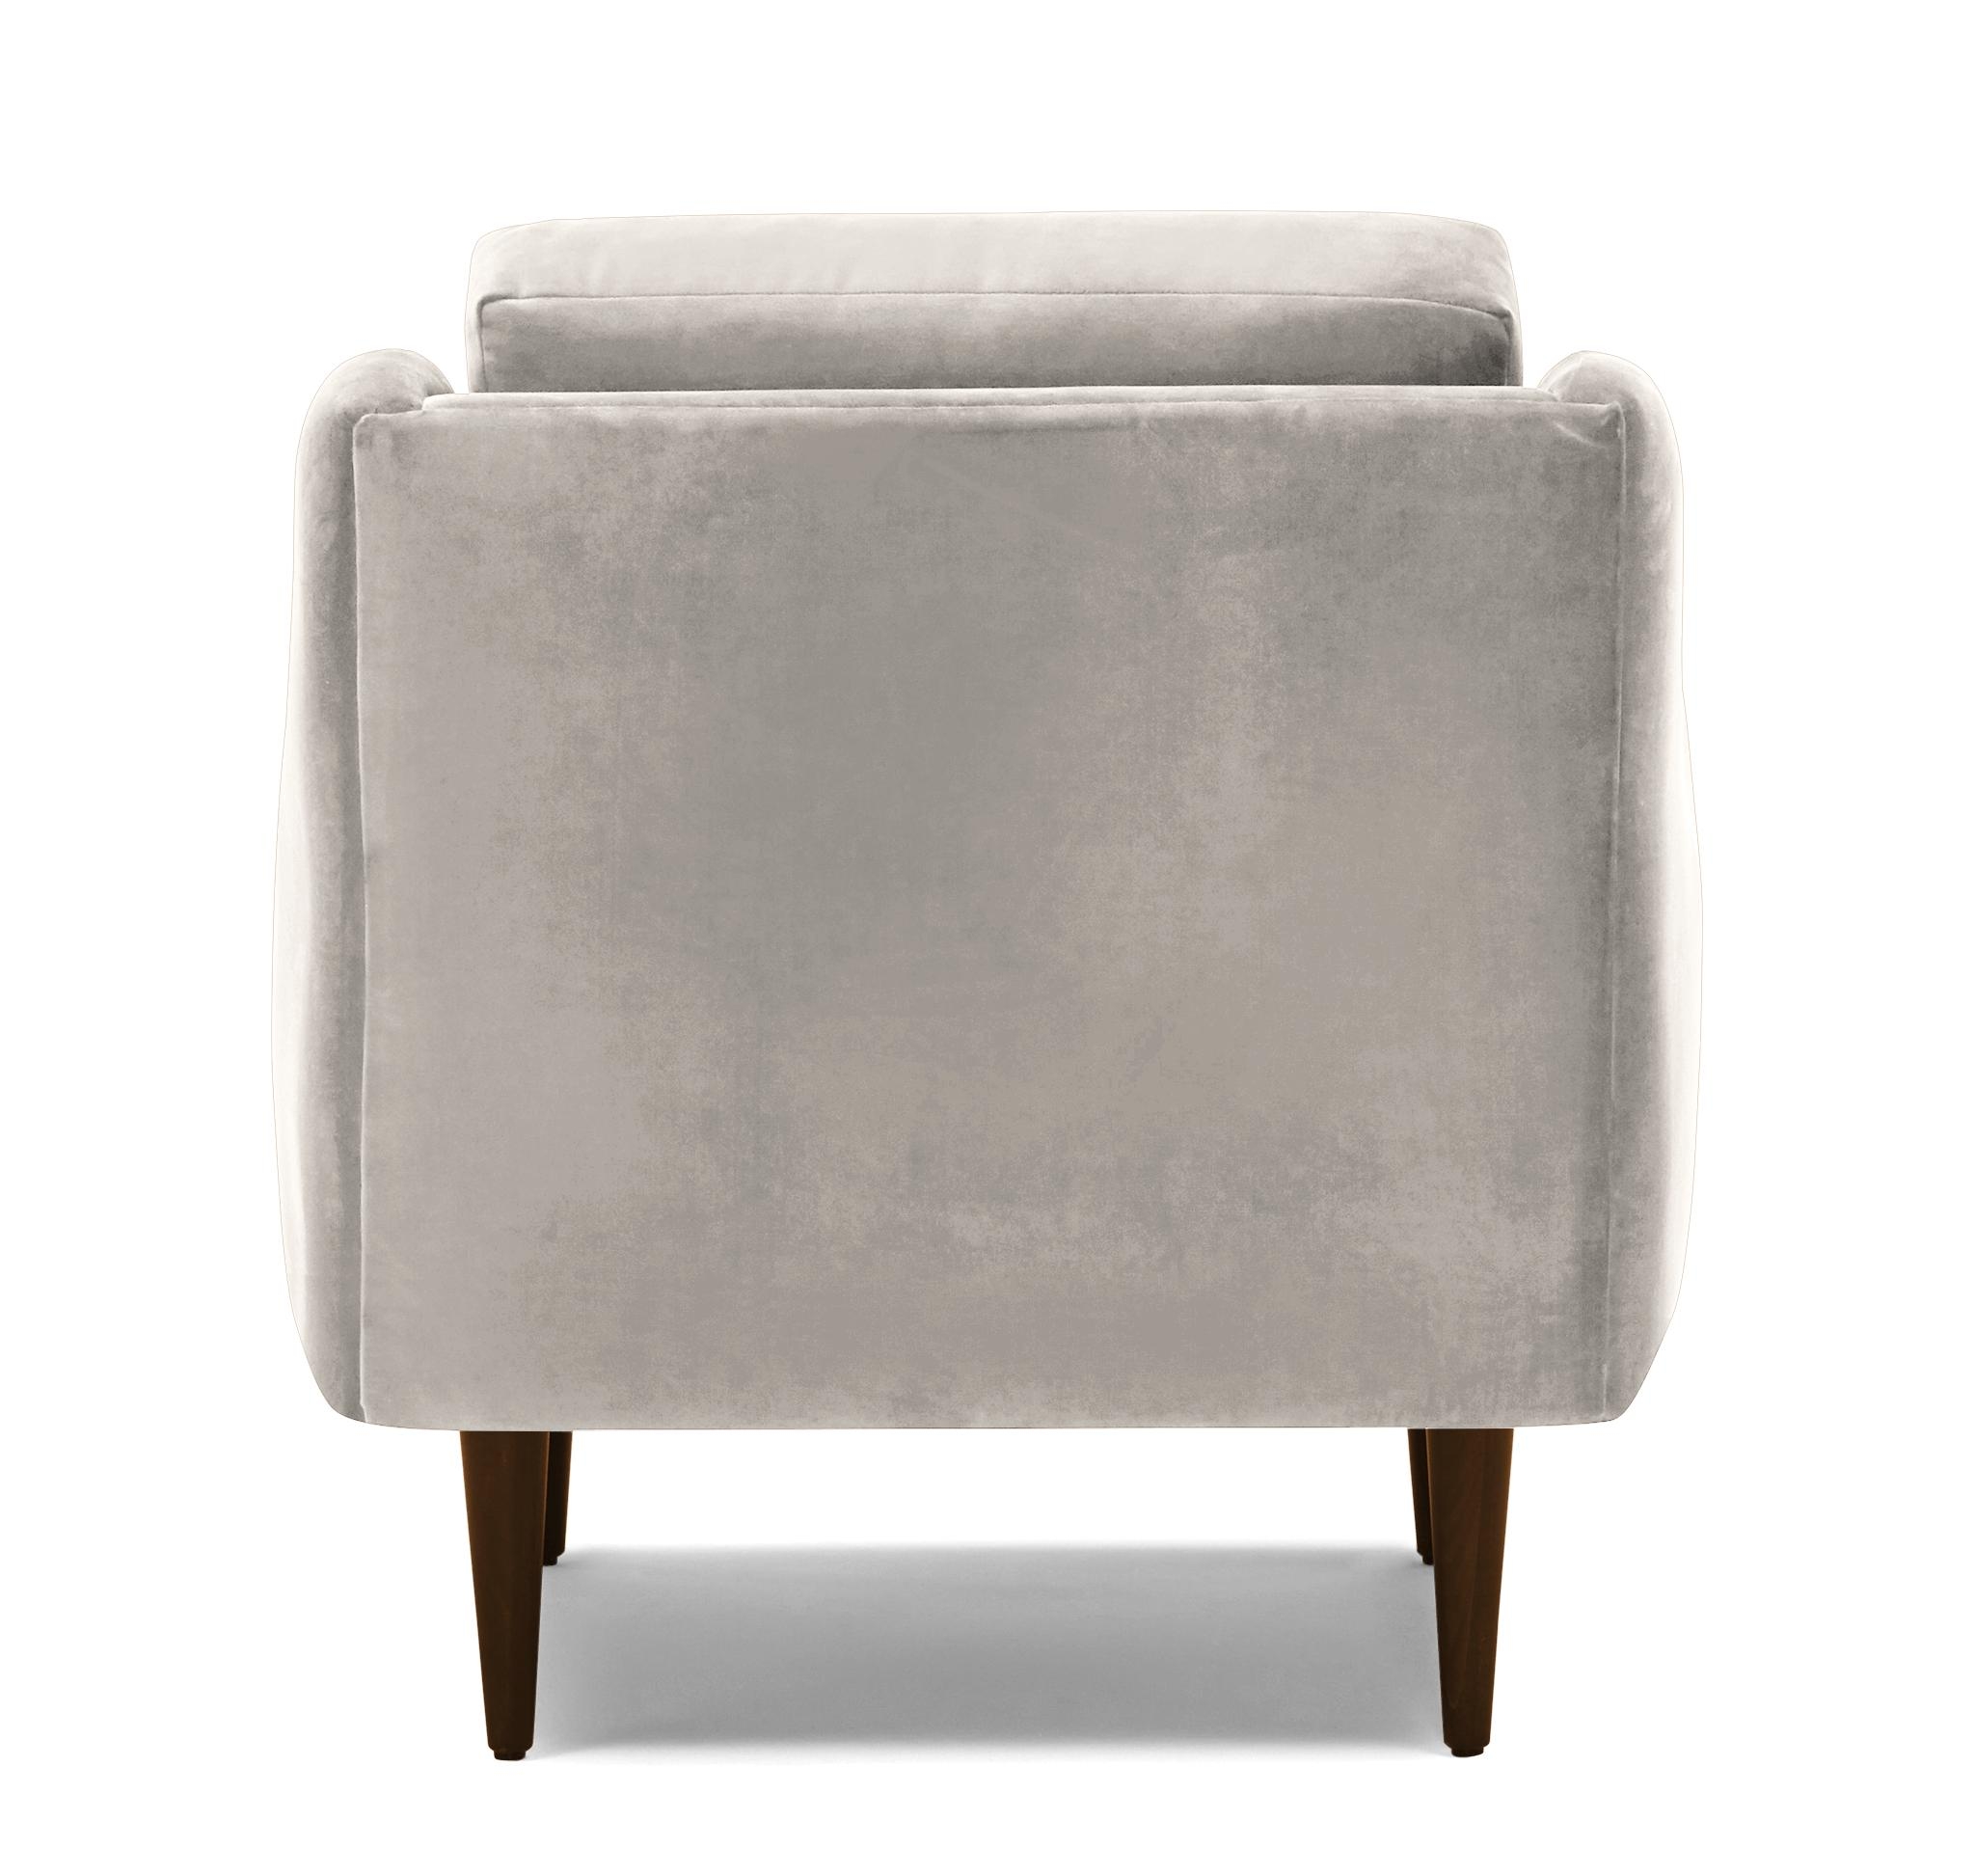 Beige/White Bell Mid Century Modern Chair - Merit Dove - Mocha - Image 4